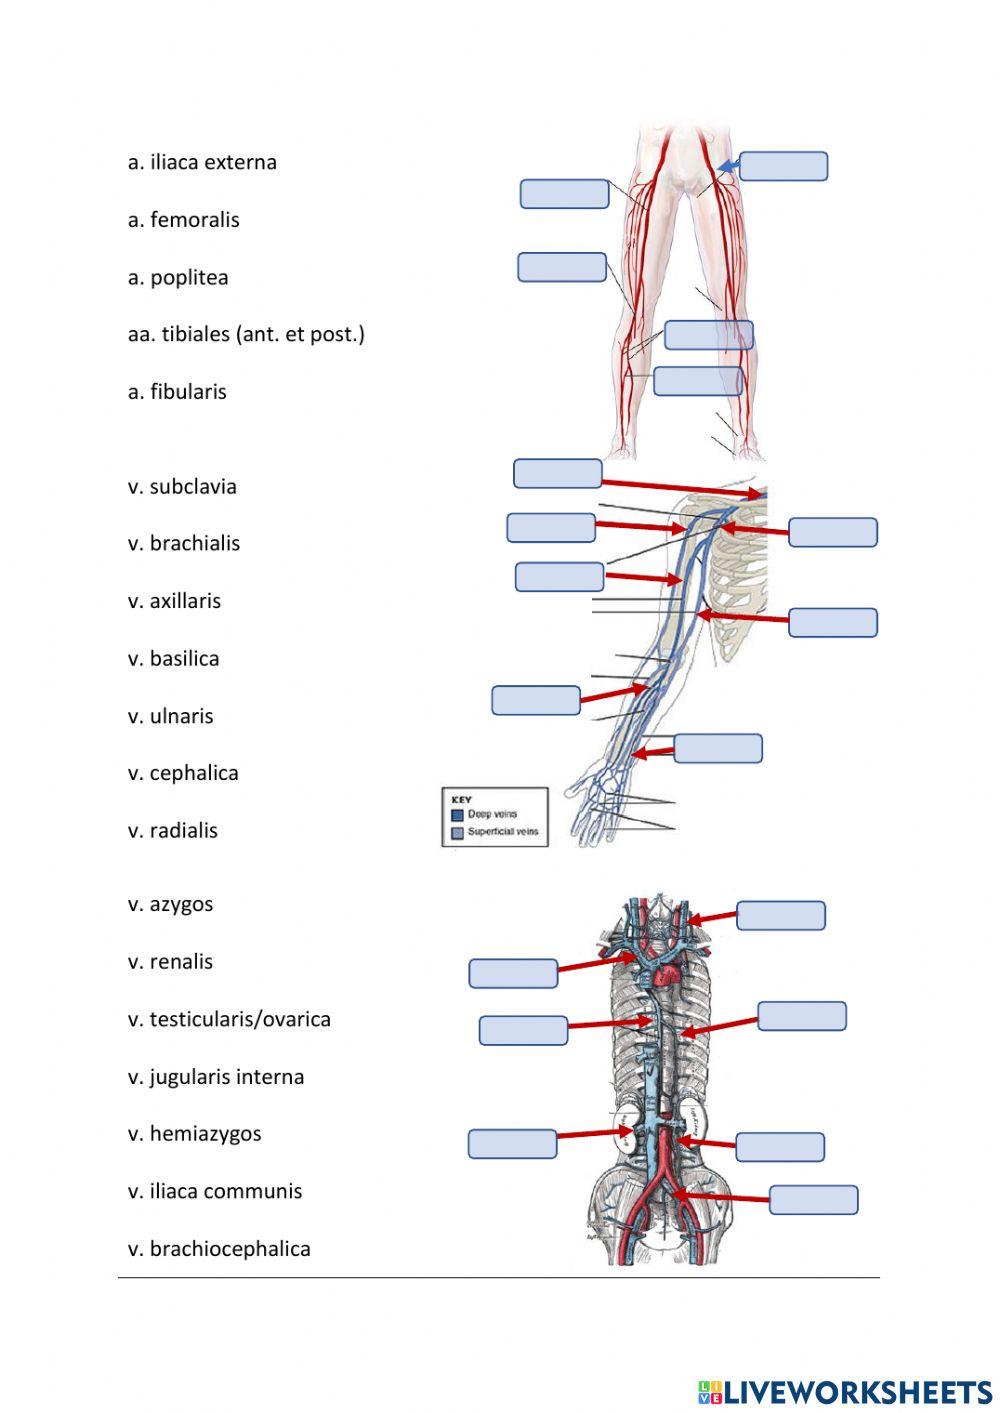 Circuitus sanguinis major - aorta abdominalis etc.